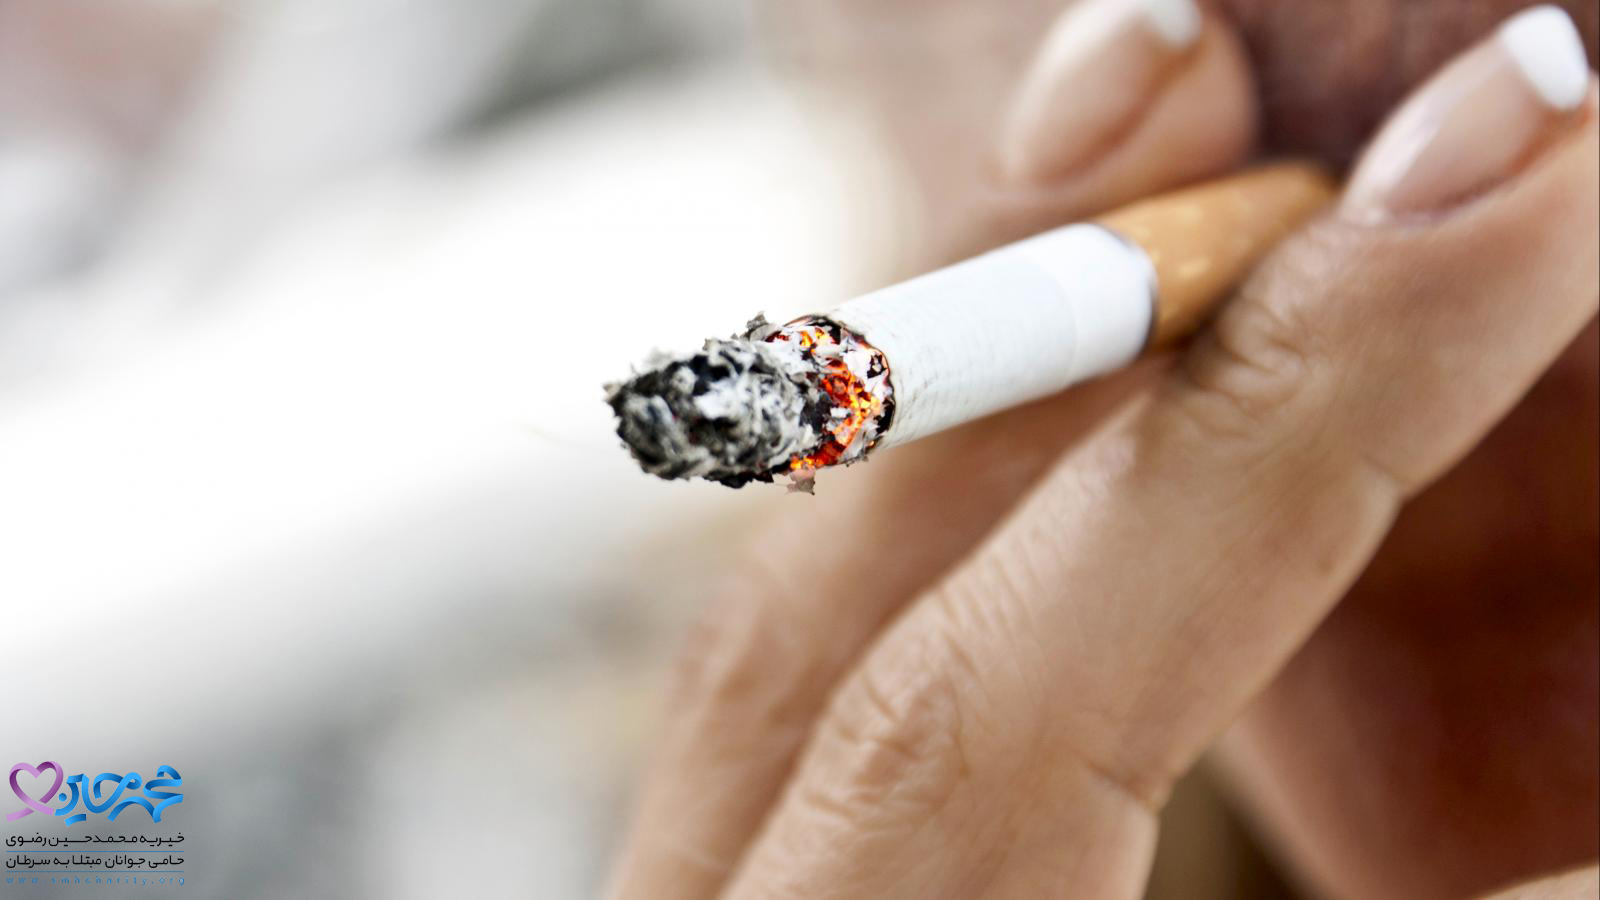 چطور سیگاری ها ناقل سرطان می شوند